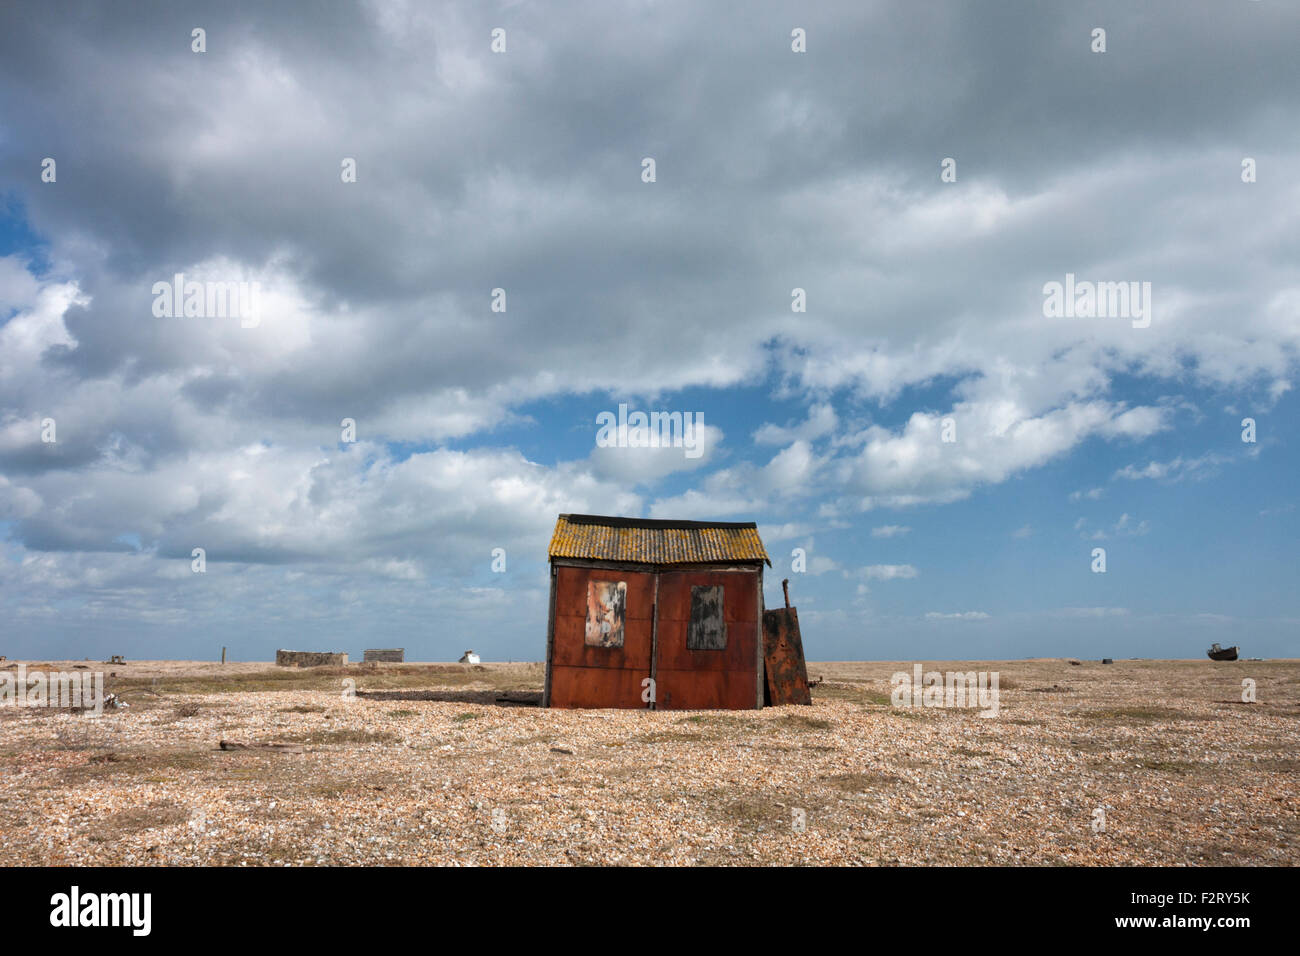 Abandoned old fishing hut on the shingle beach, Dungeness, Kent, England, UK Stock Photo